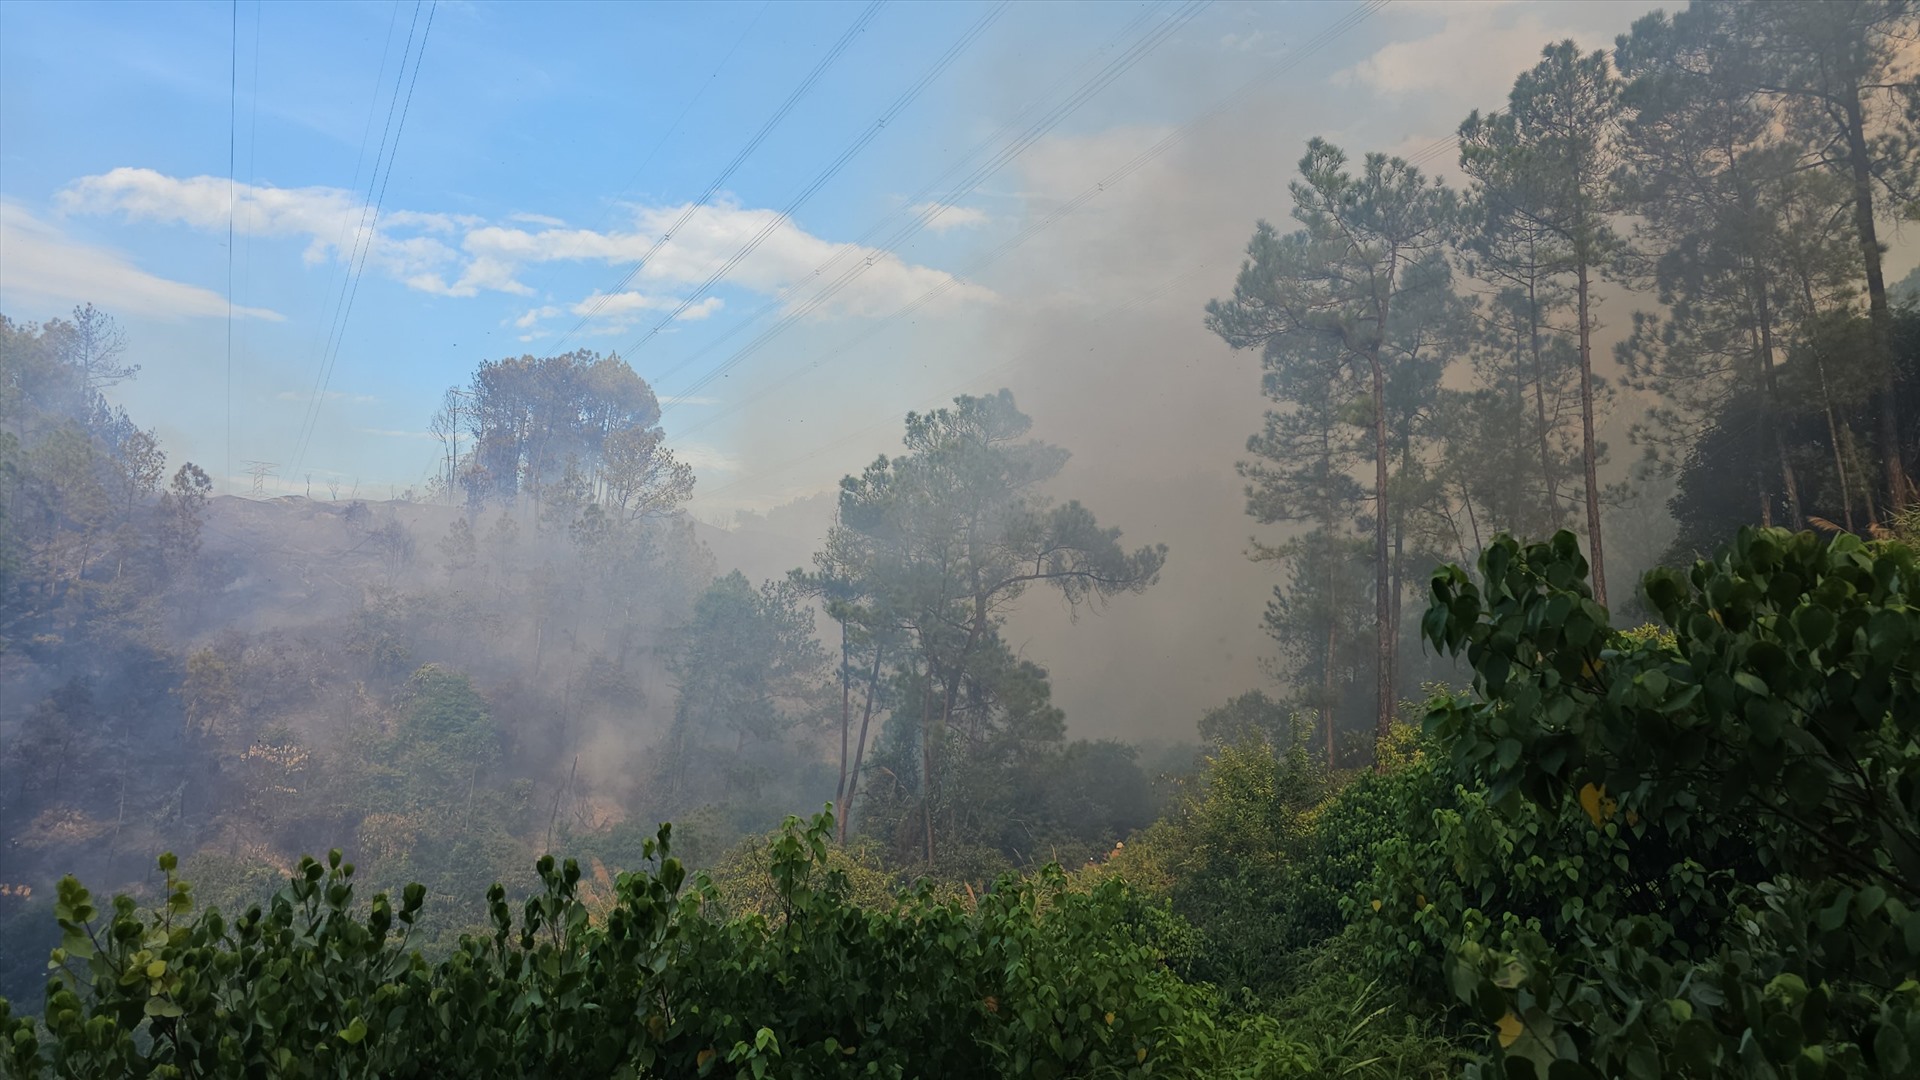 Lãnh đạo Chi Cục kiểm lâm tỉnh Thừa Thiên Huế cho biết, khoảng 14h30 chiều cùng ngày, đơn vị nhận được tin xảy ra cháy rừng thông nên huy động lực lượng, phương tiện đến hiện trường để dập lửa. 